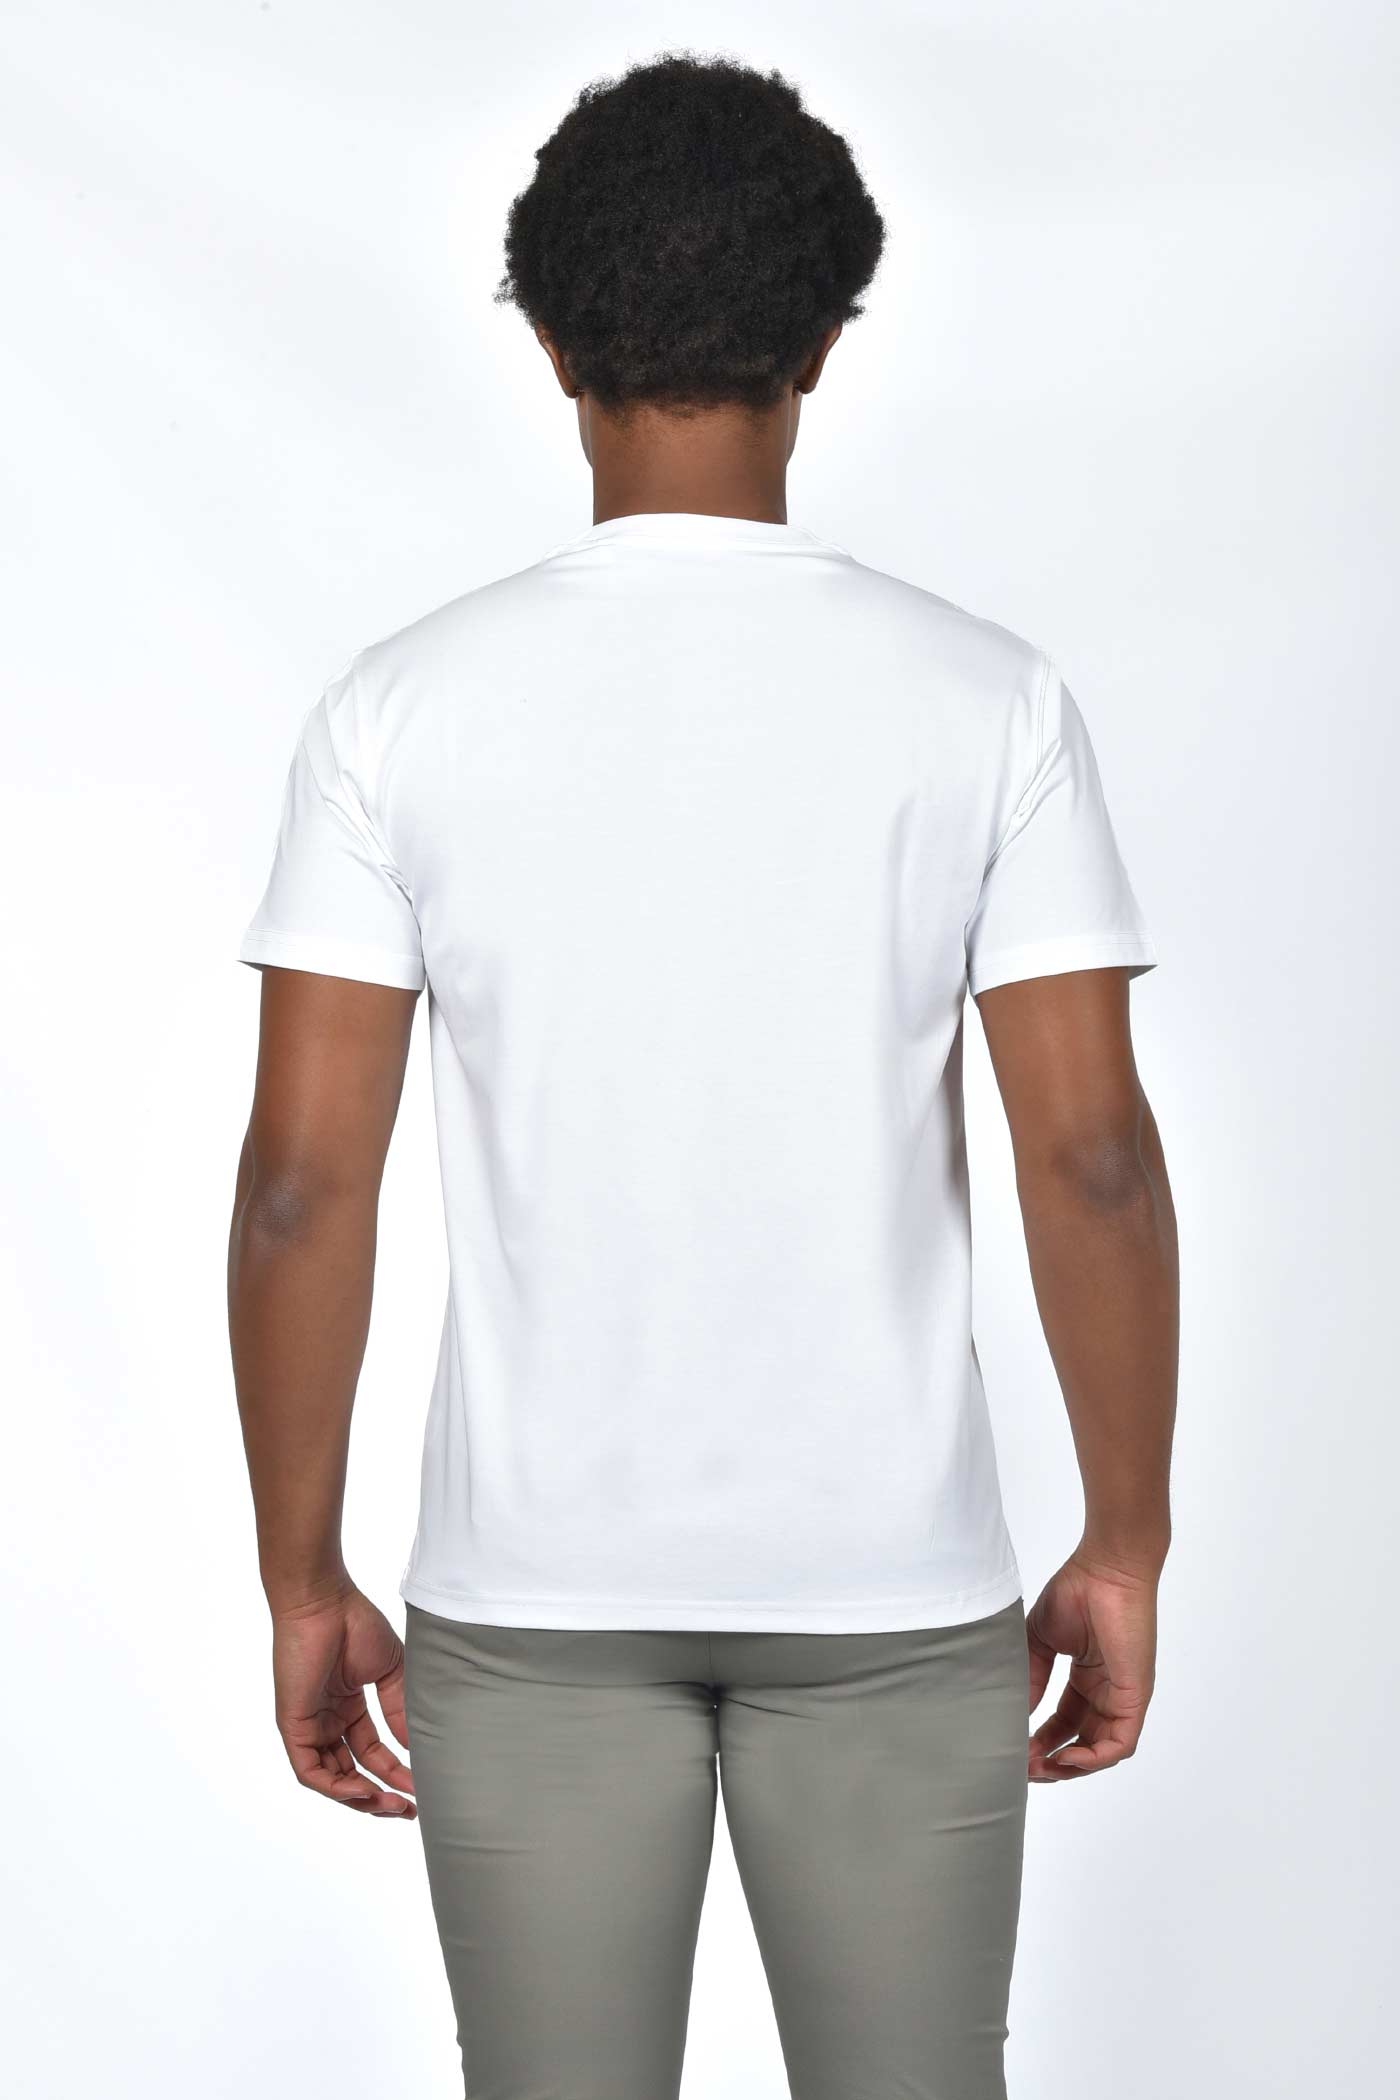 ανδρικό-t-shirt-με-ανάποδη-γραφή-στάμπας